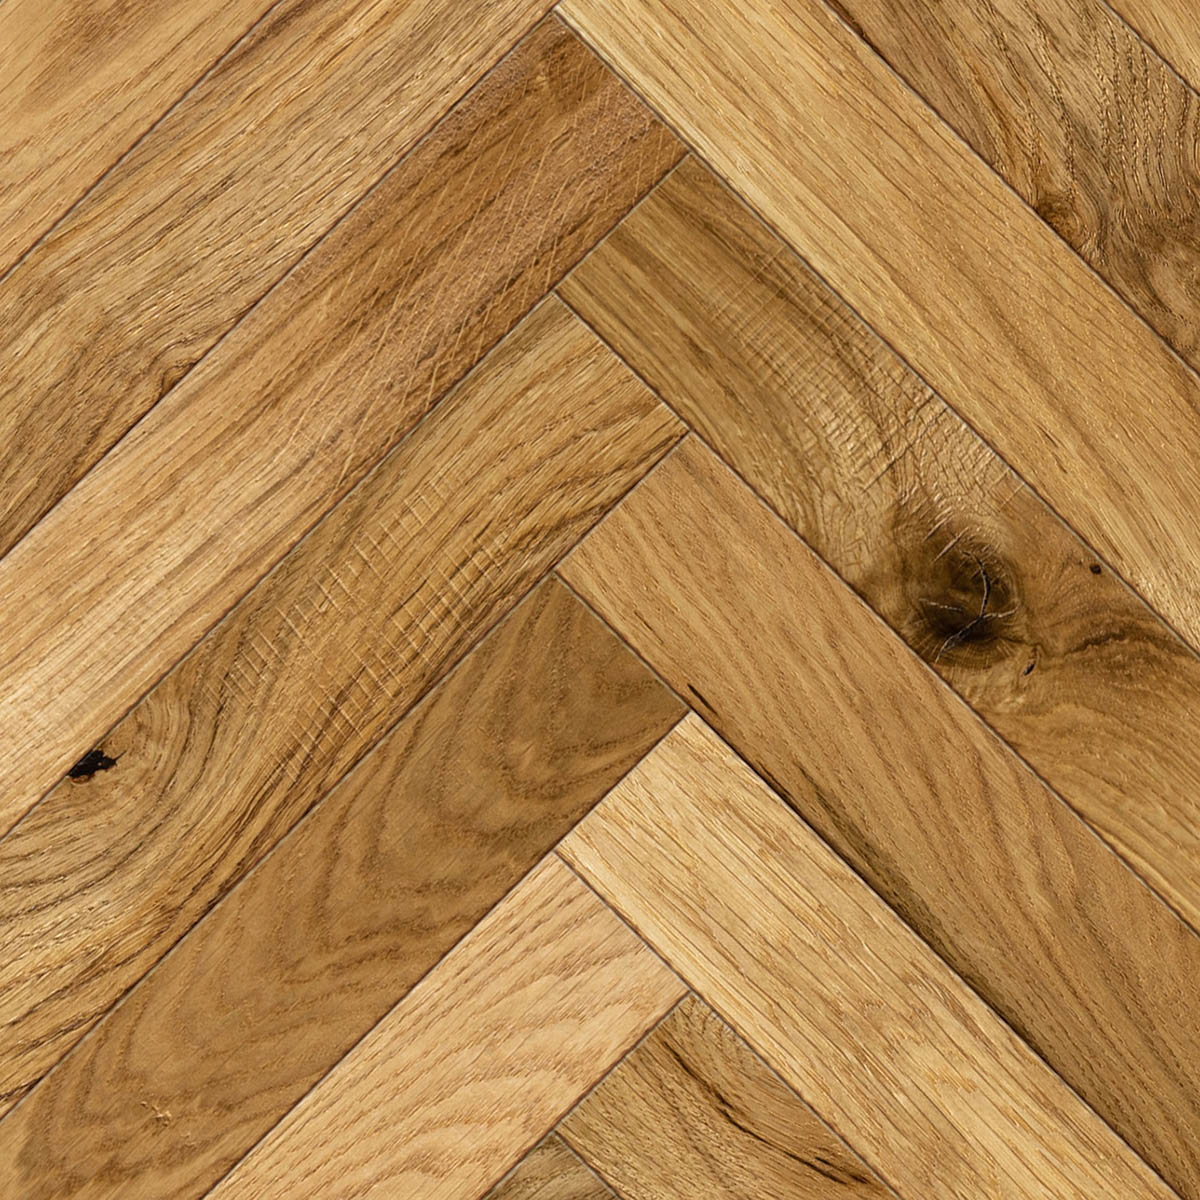 Swiftridge Herringbone - Distressed Rustic-Grade Oak Floor